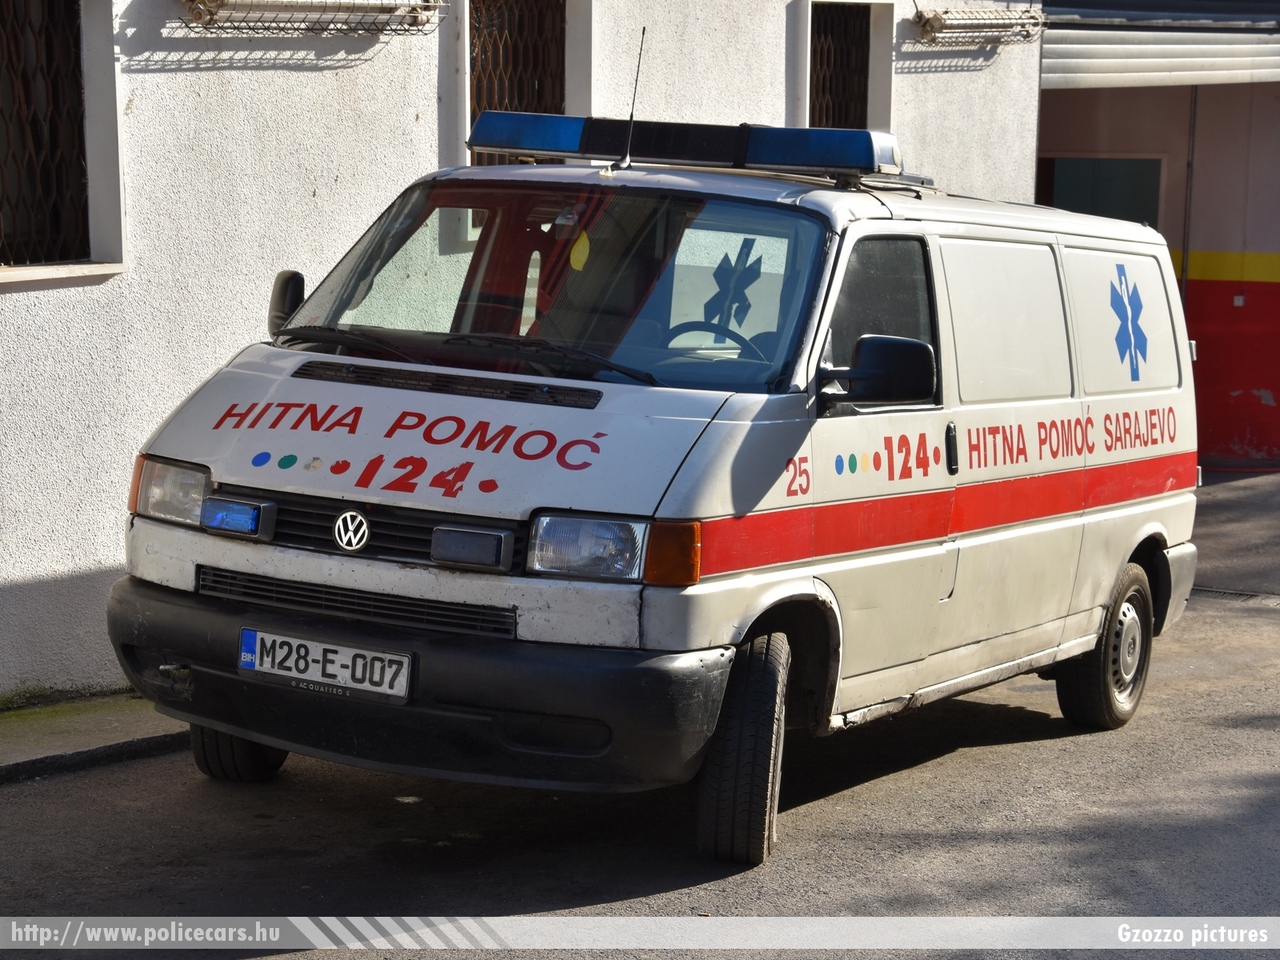 Volkswagen Transporter T4, Sarajevo, fotó: Gzozzo pictures
Keywords: Bosznia-Hercegovina mentő mentőautó bosnia bosnia-herzegovina ambulance